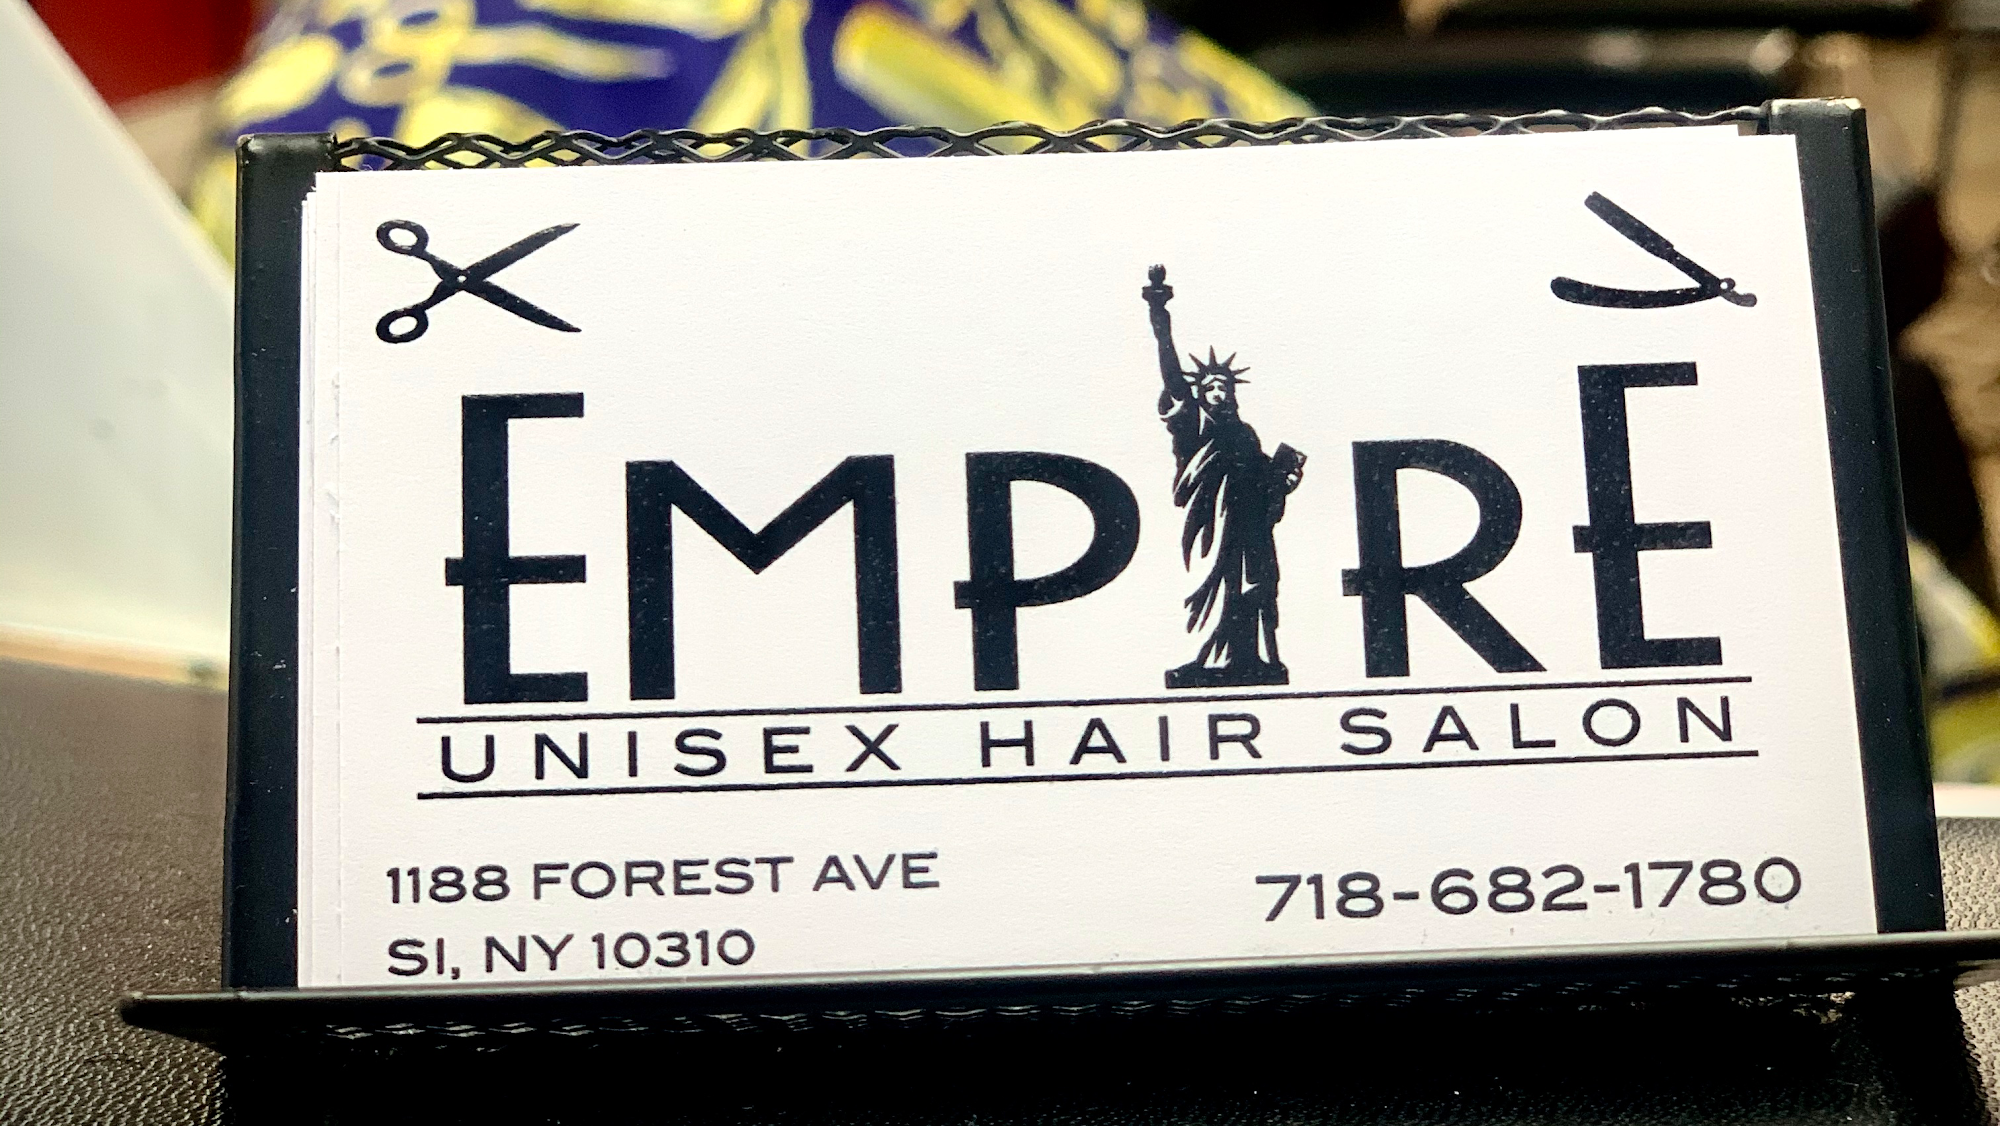 Empire Barber Shop NY